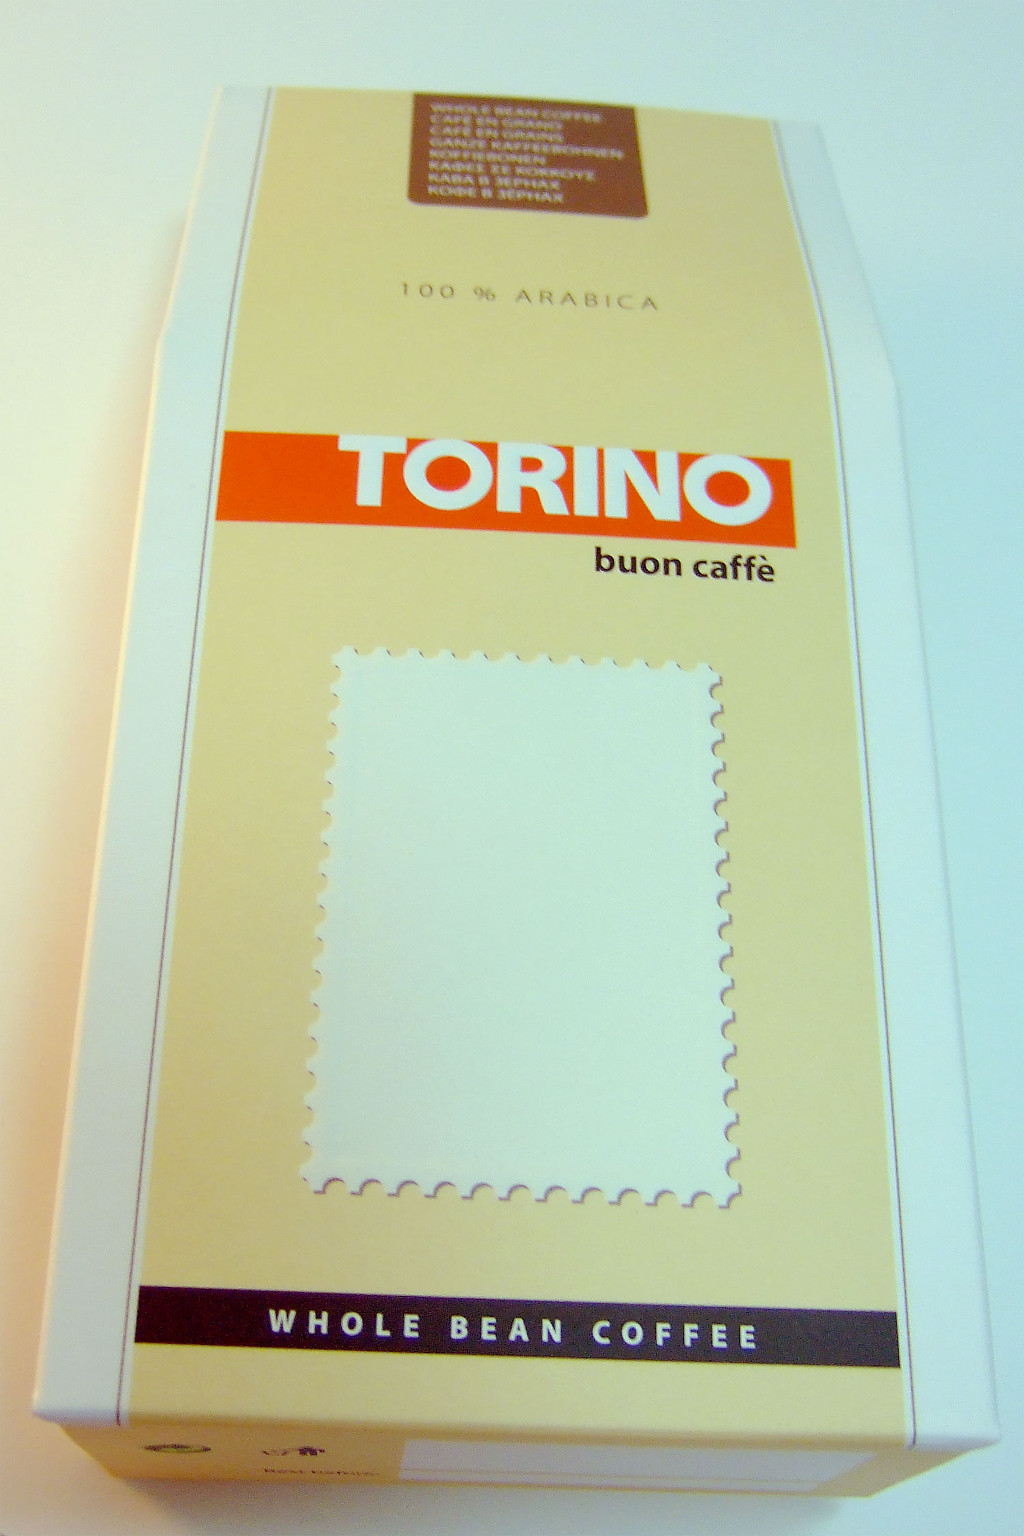 Печать коробов «Torino». Полиграфия типографии Макрос, изготовление коробов, спецификация 969995-1